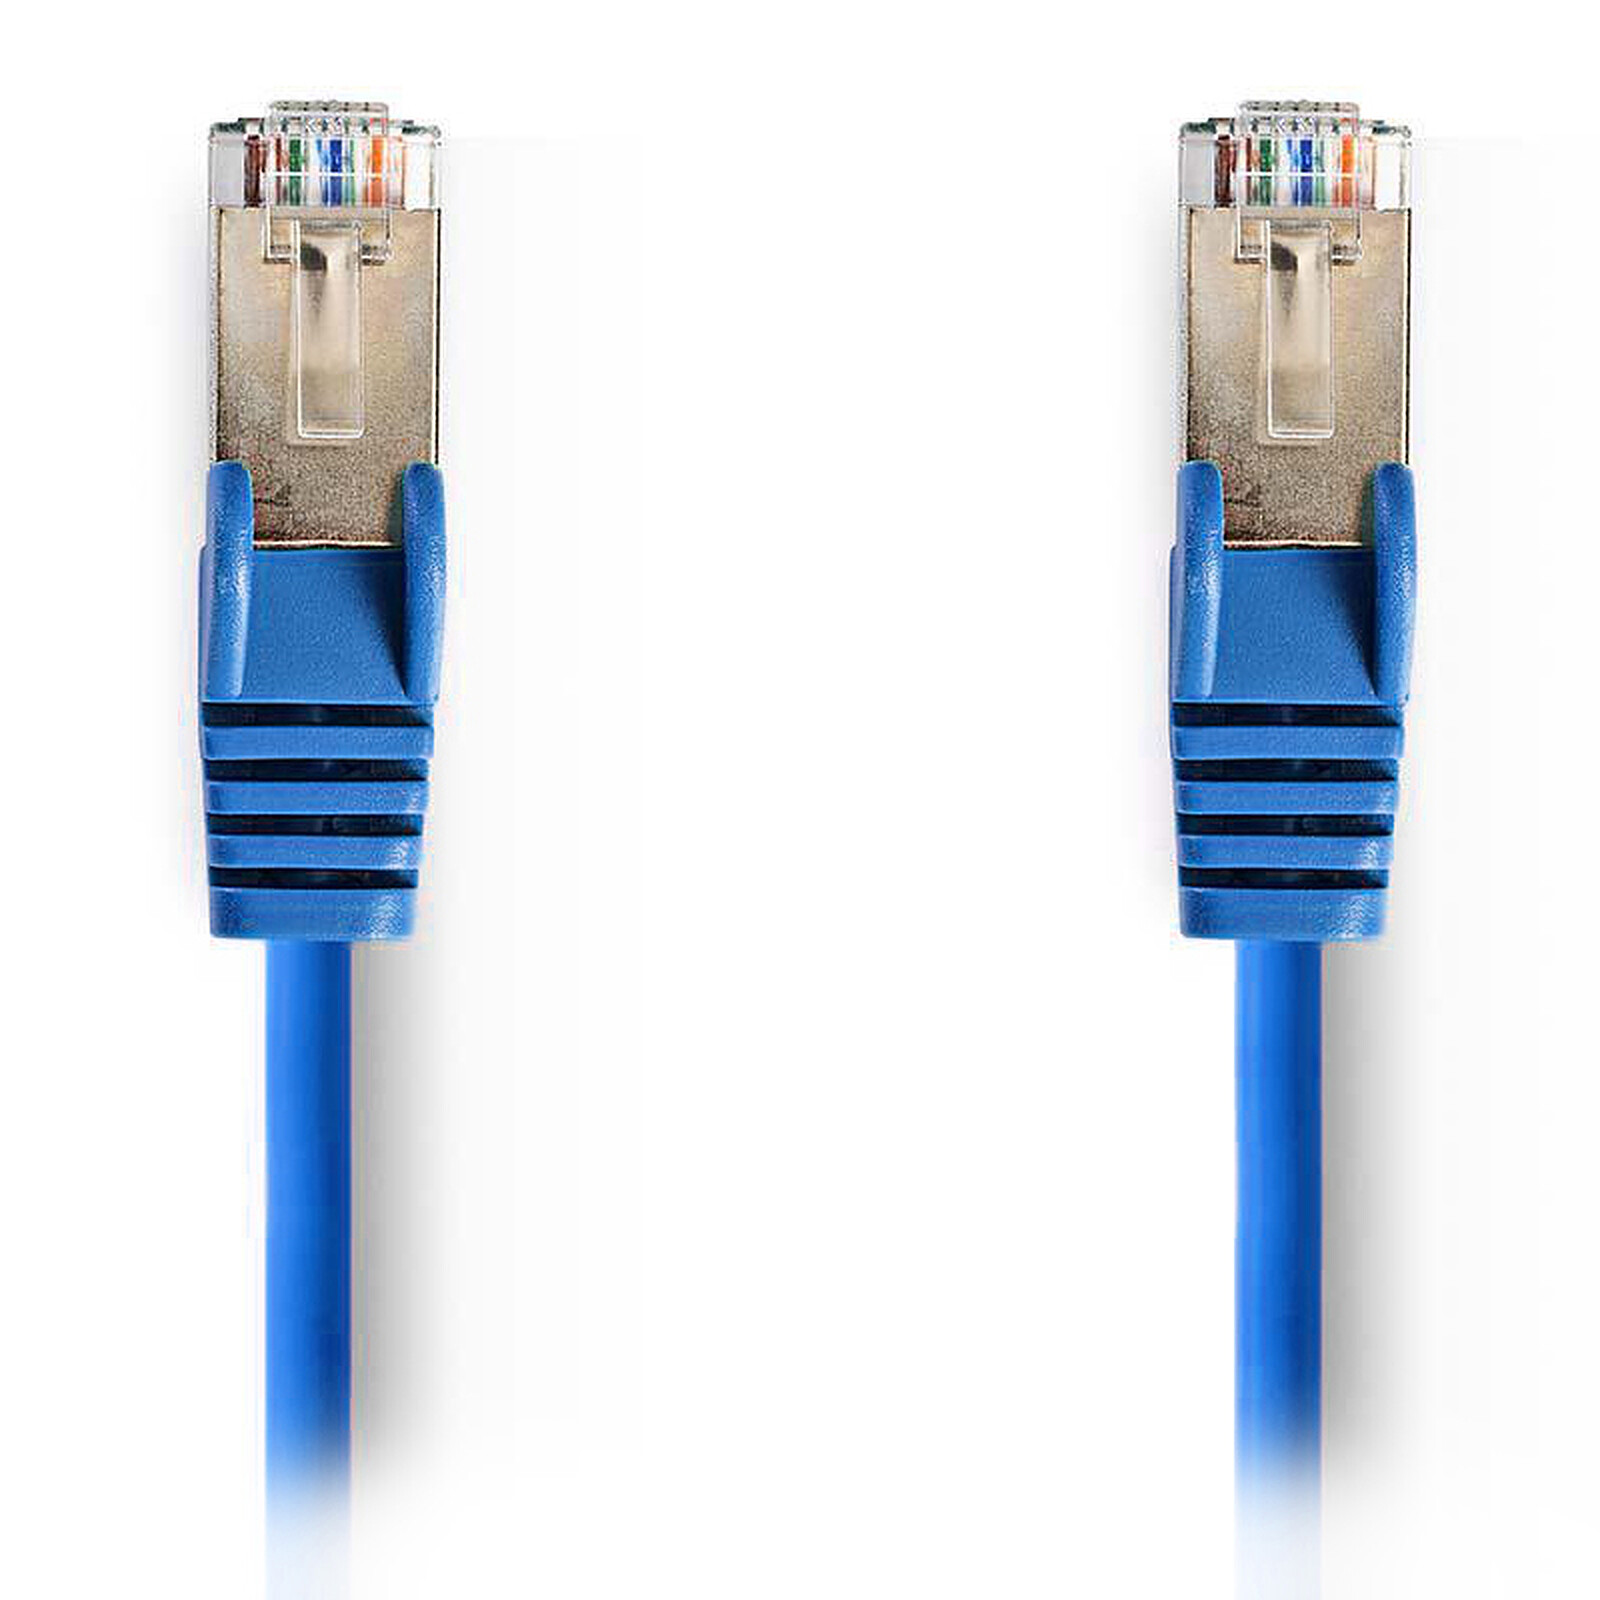 Nedis RJ45 categoría de cable 5e SF/UTP 10 m Cable RJ45 en LDLC